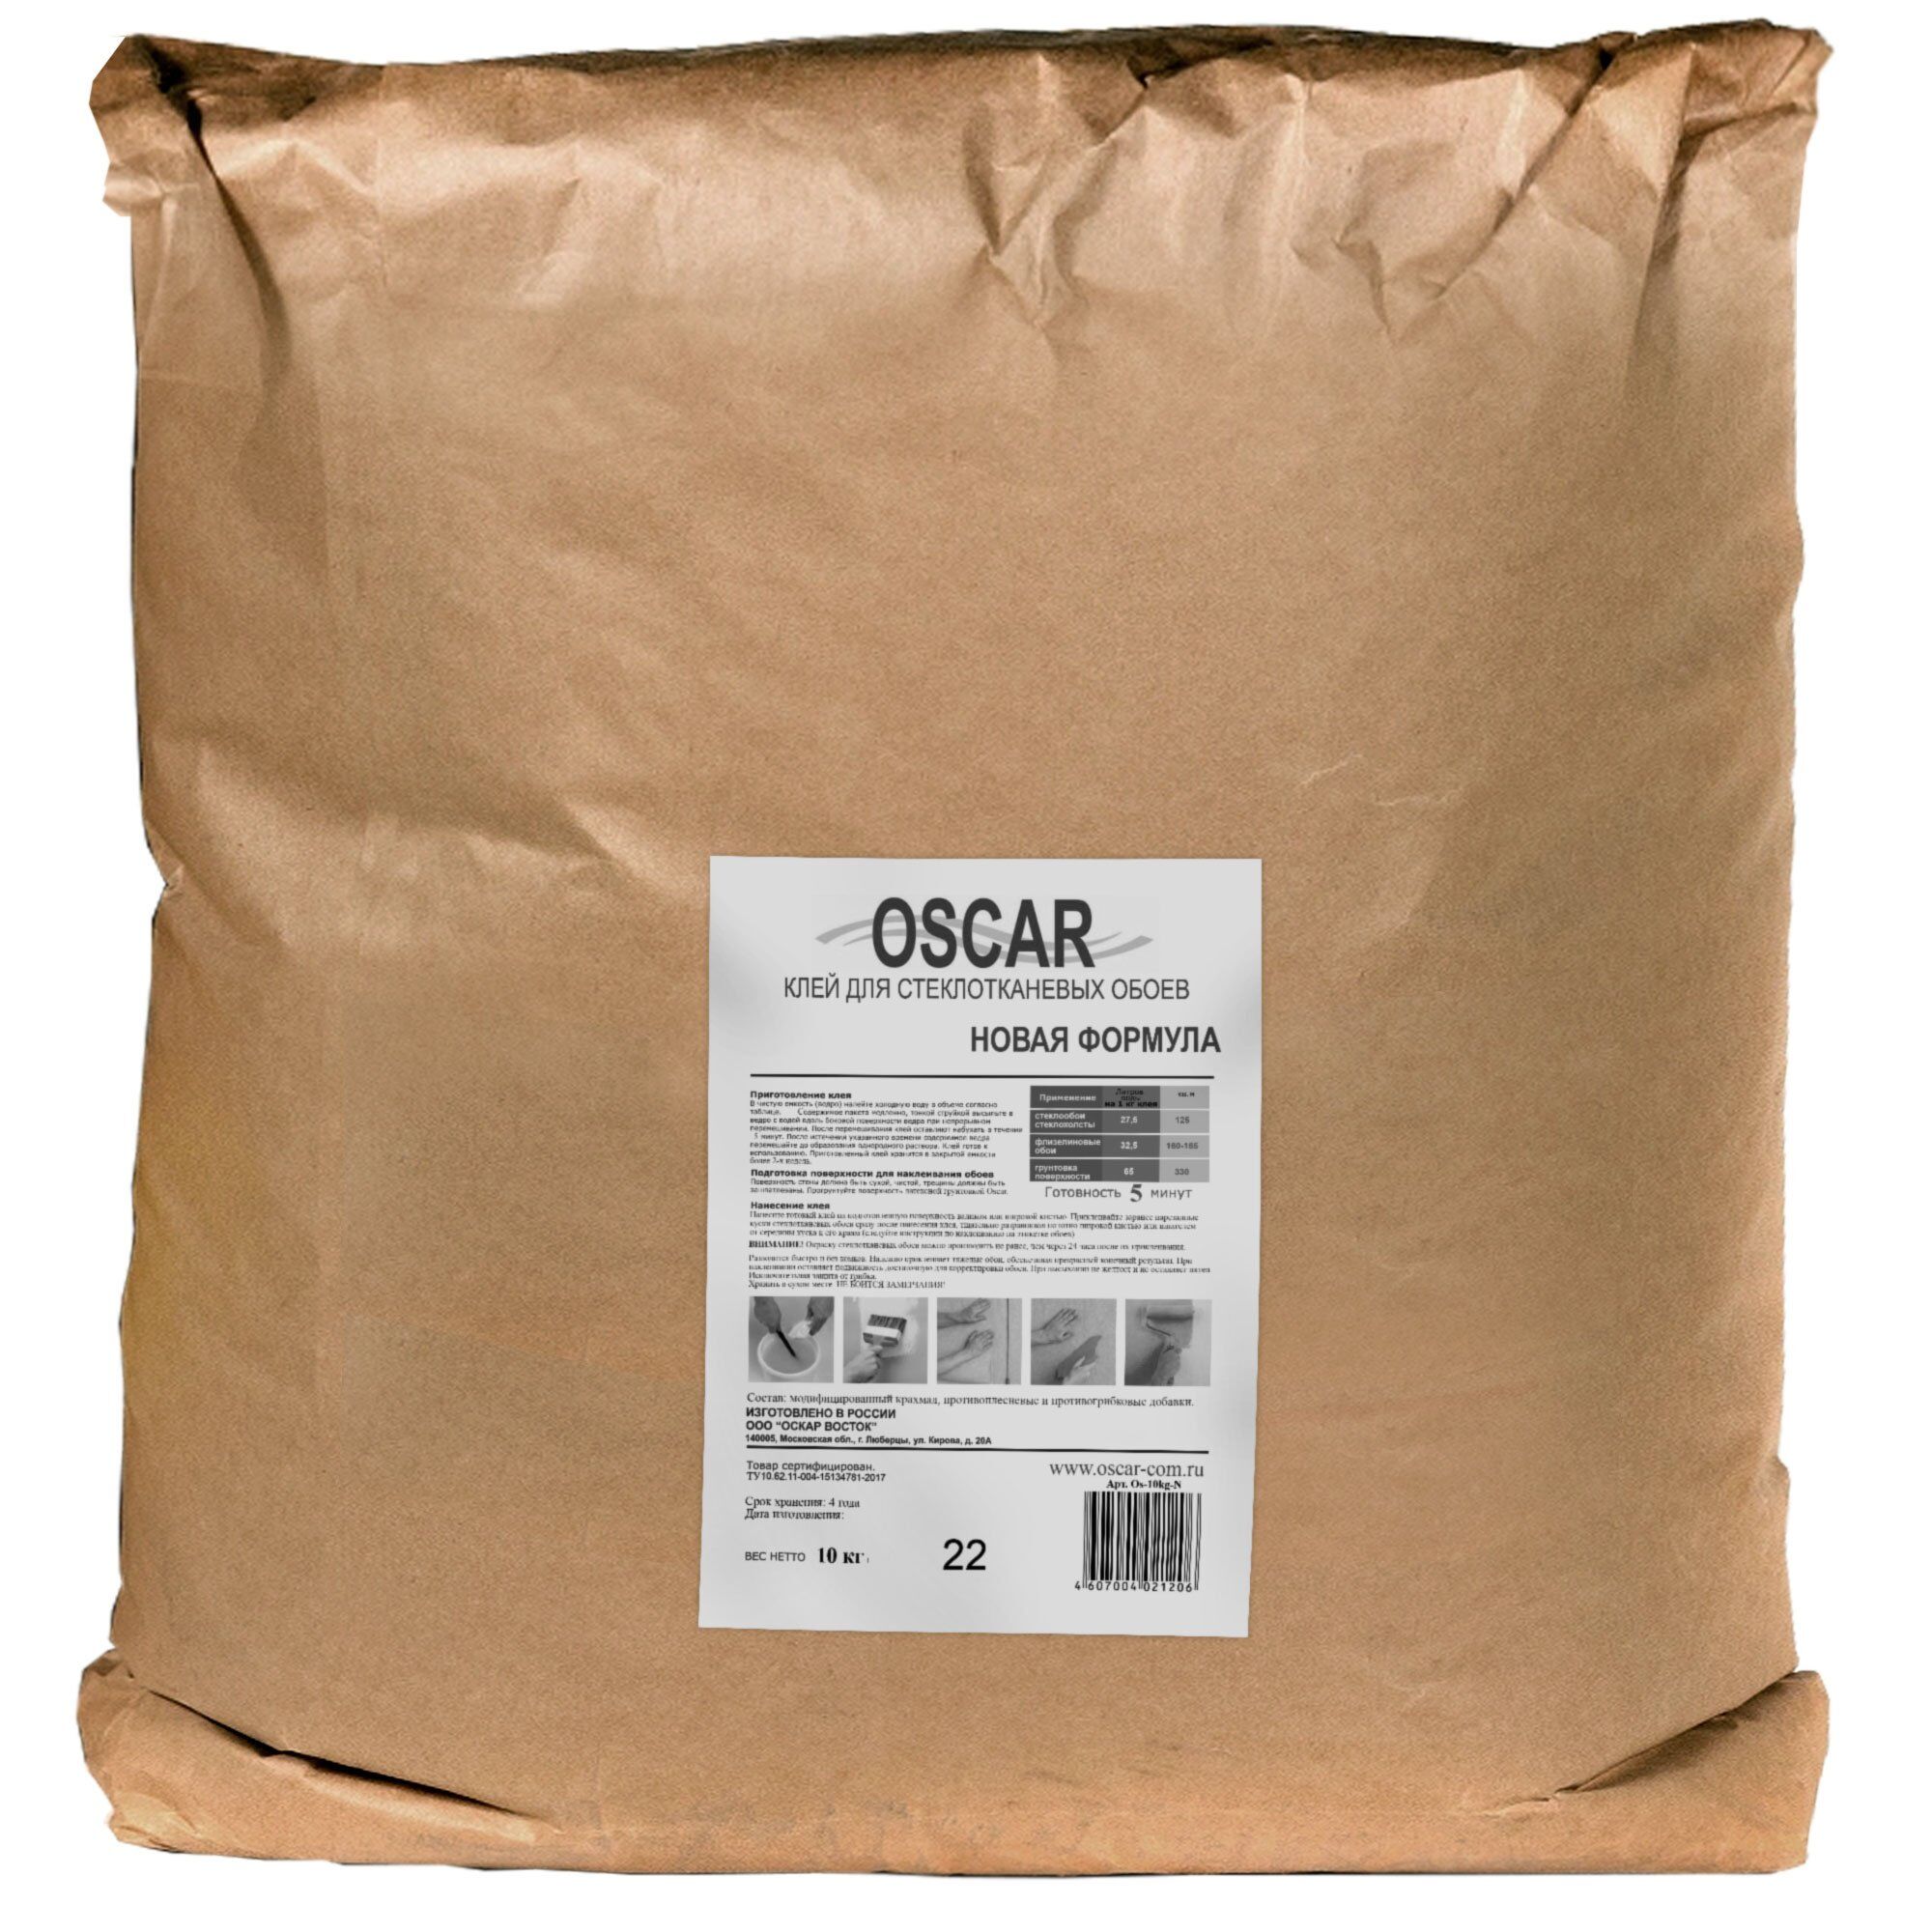 Сухой клей "Oscar" 10 кг. (мешок) ООО "ОСКАР-ВОСТОК" (Россия)